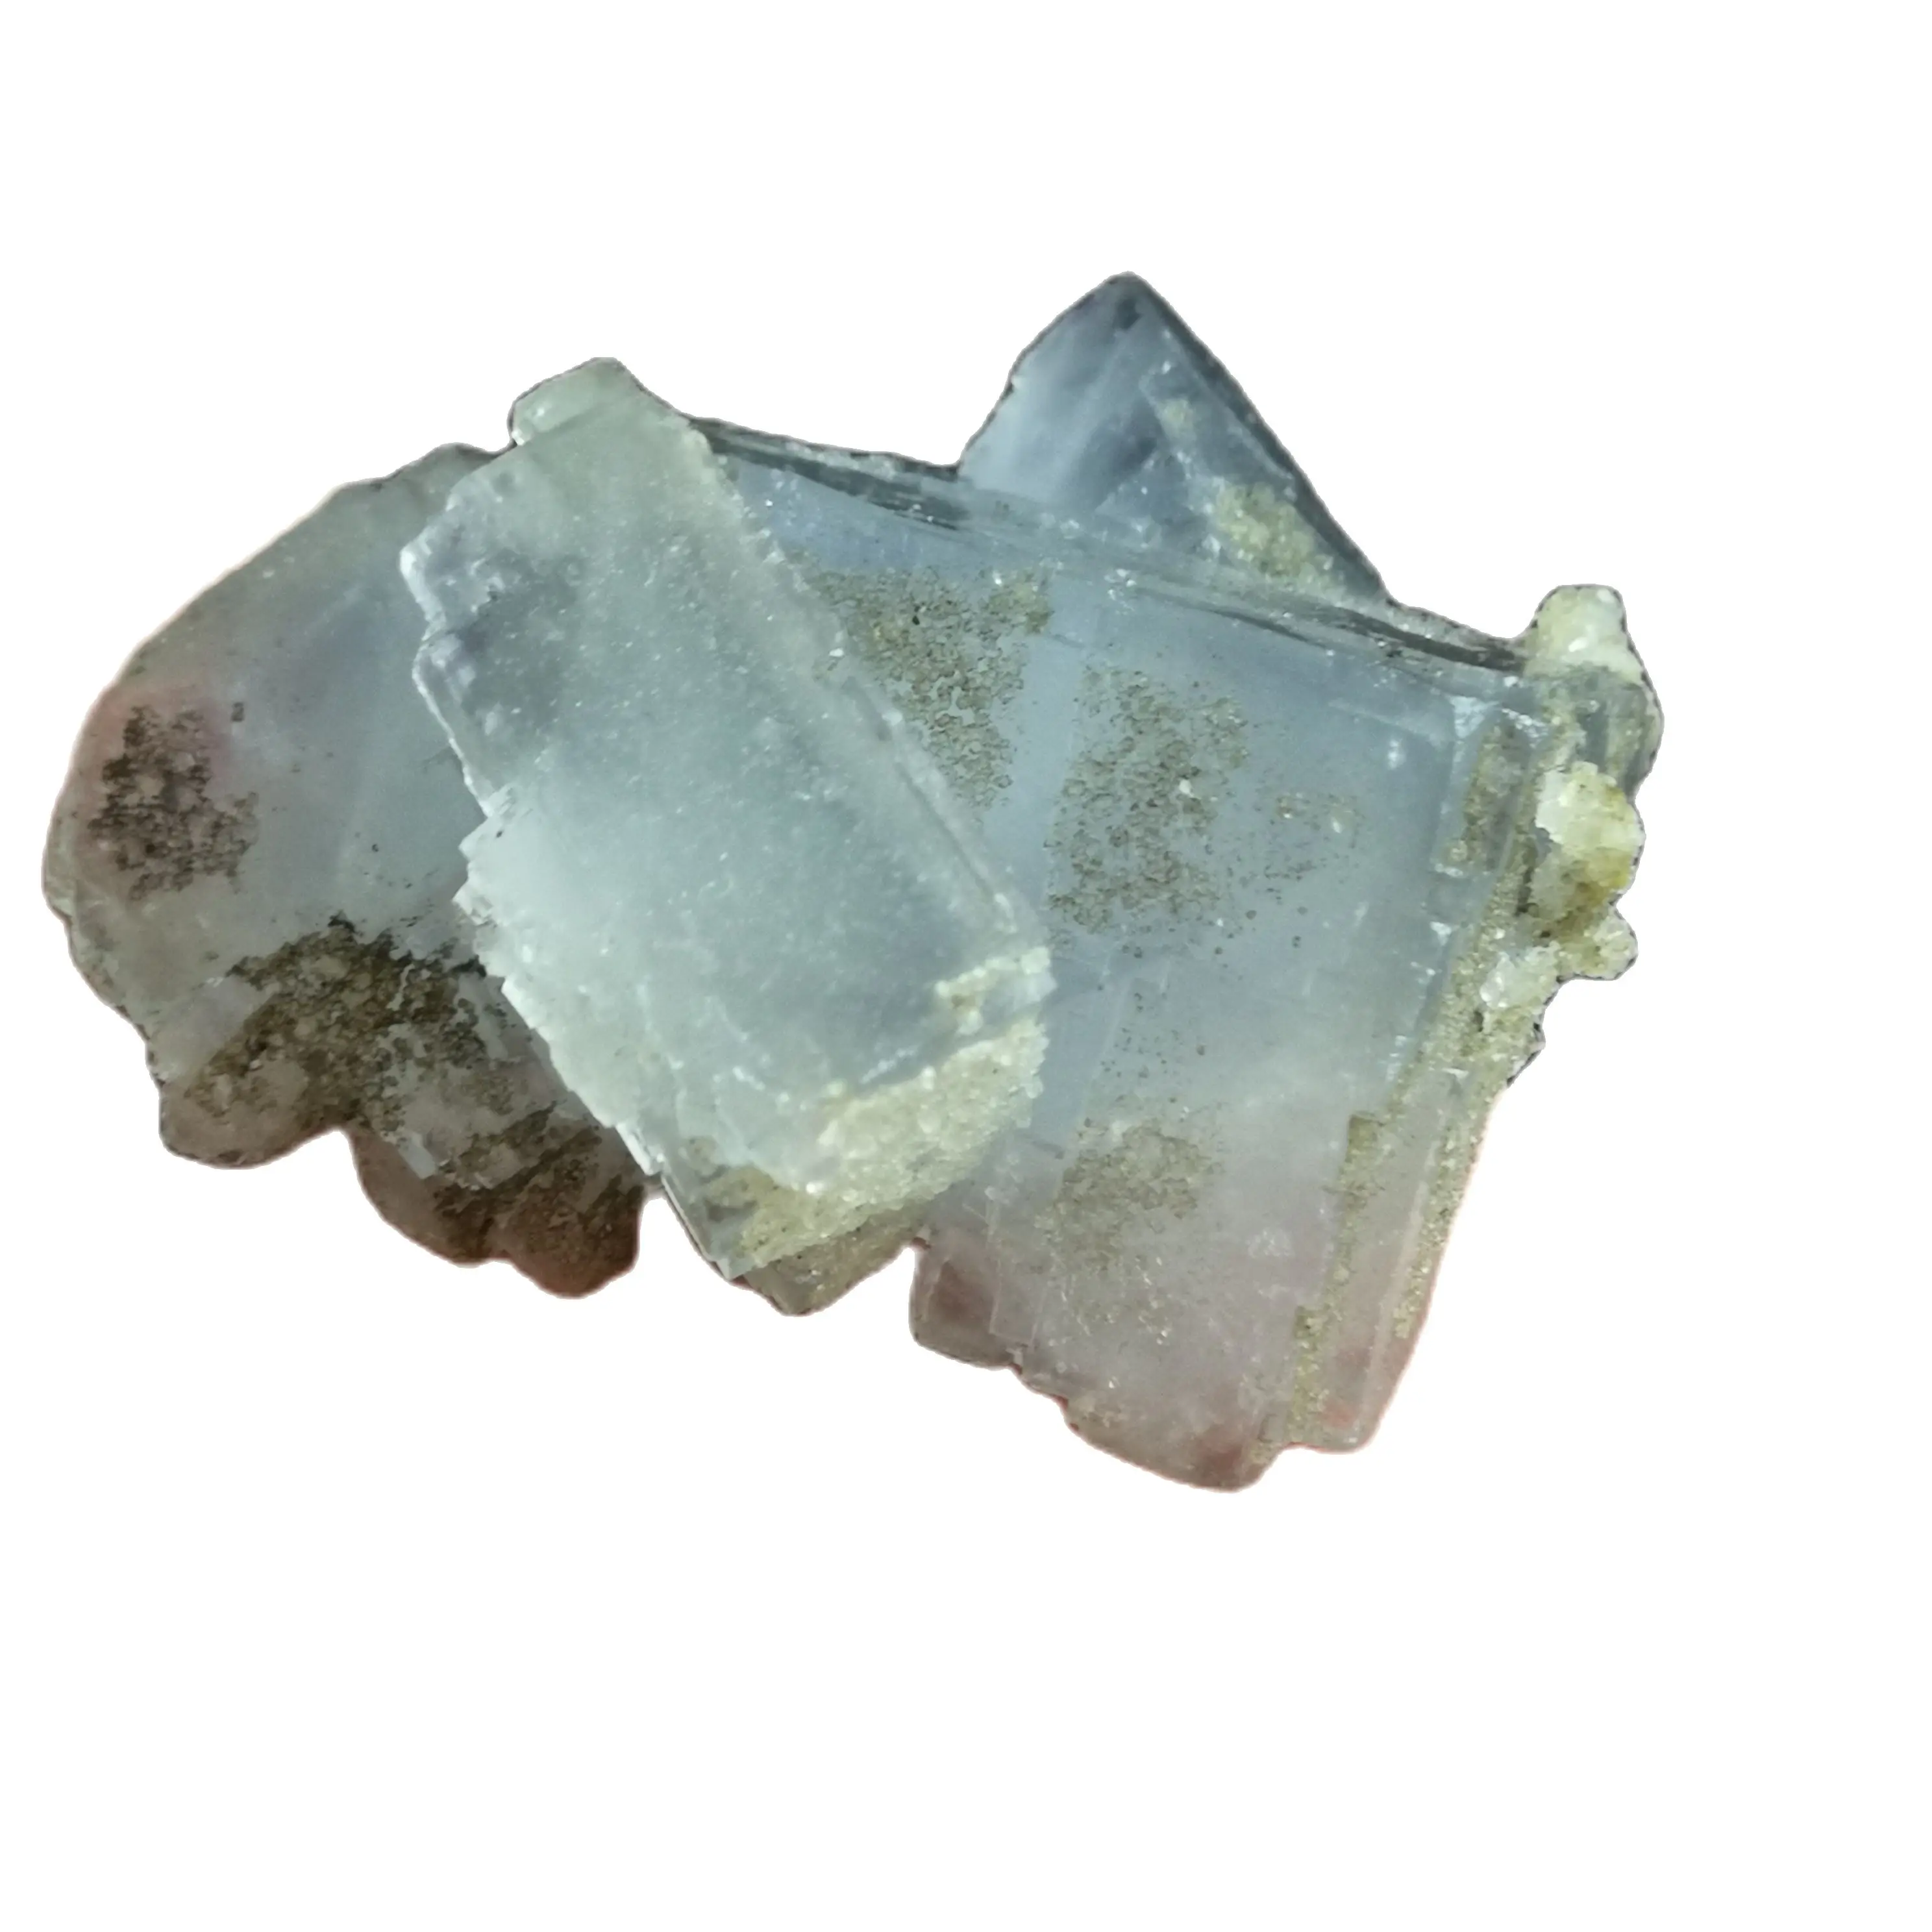 48 3 натуральные образцы минералов флюорита из морской синей скалы домашние